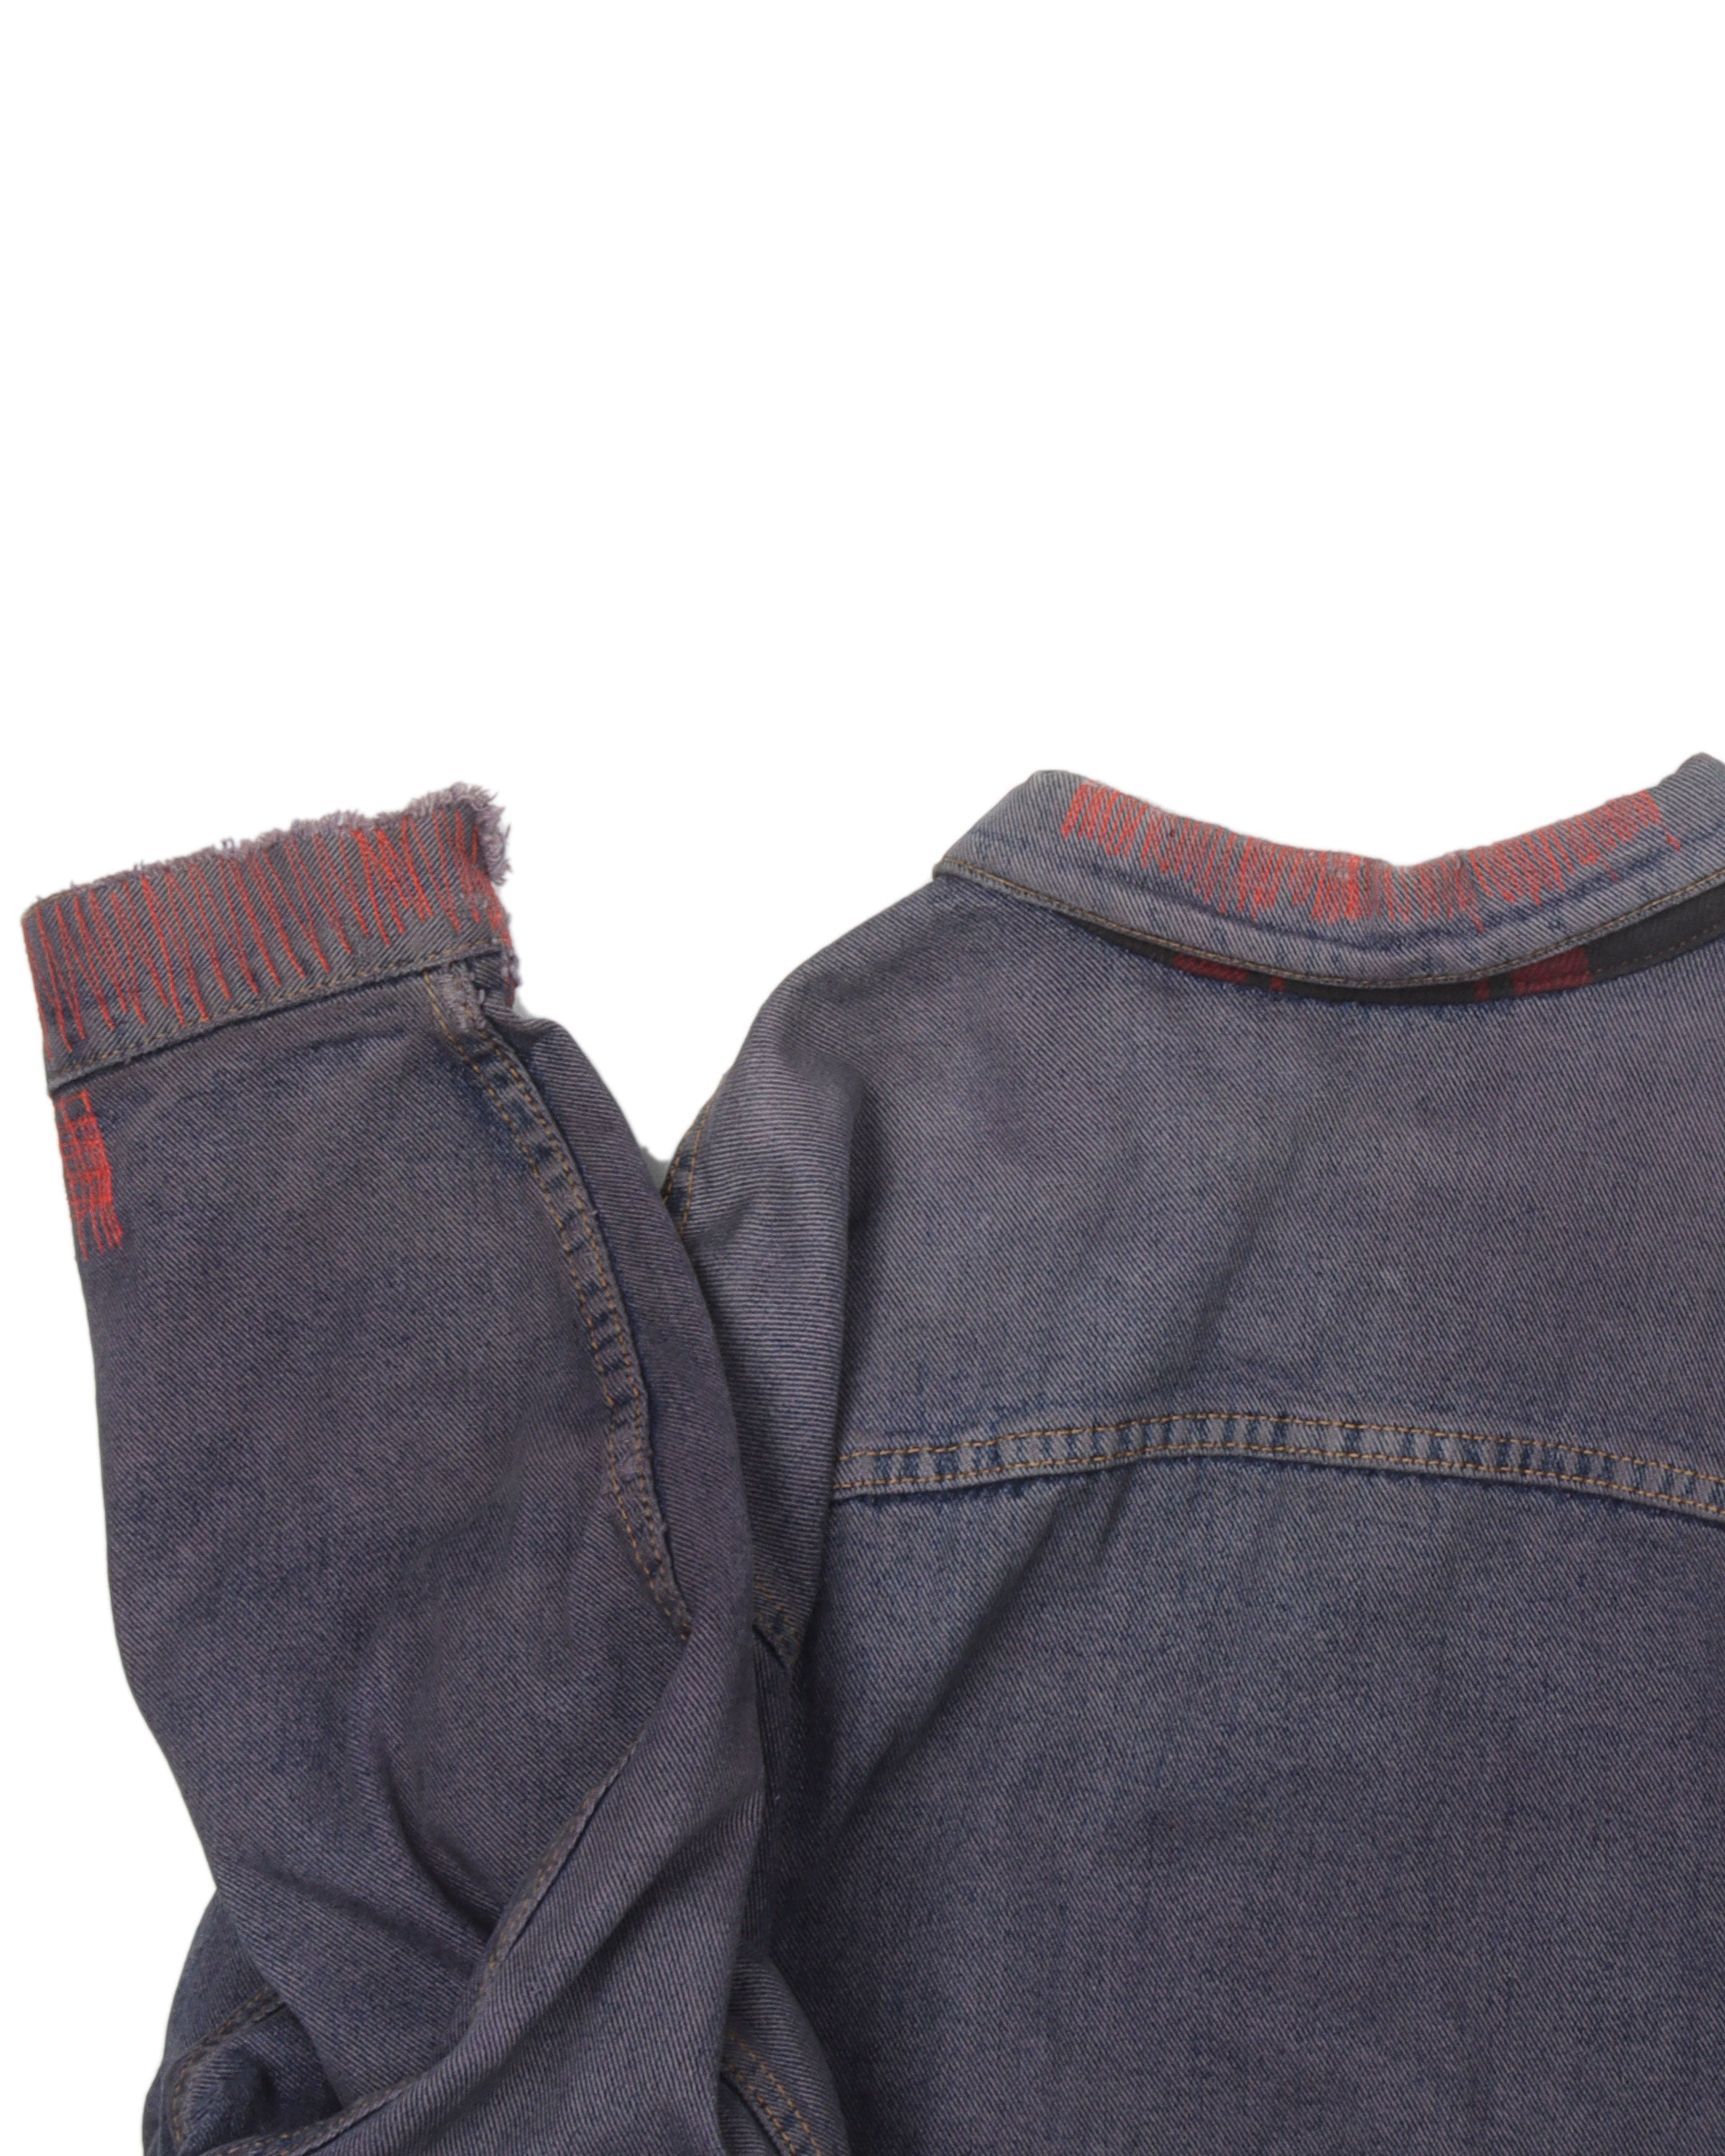 Vintage Levi's Flannel-Lined Denim Jacket